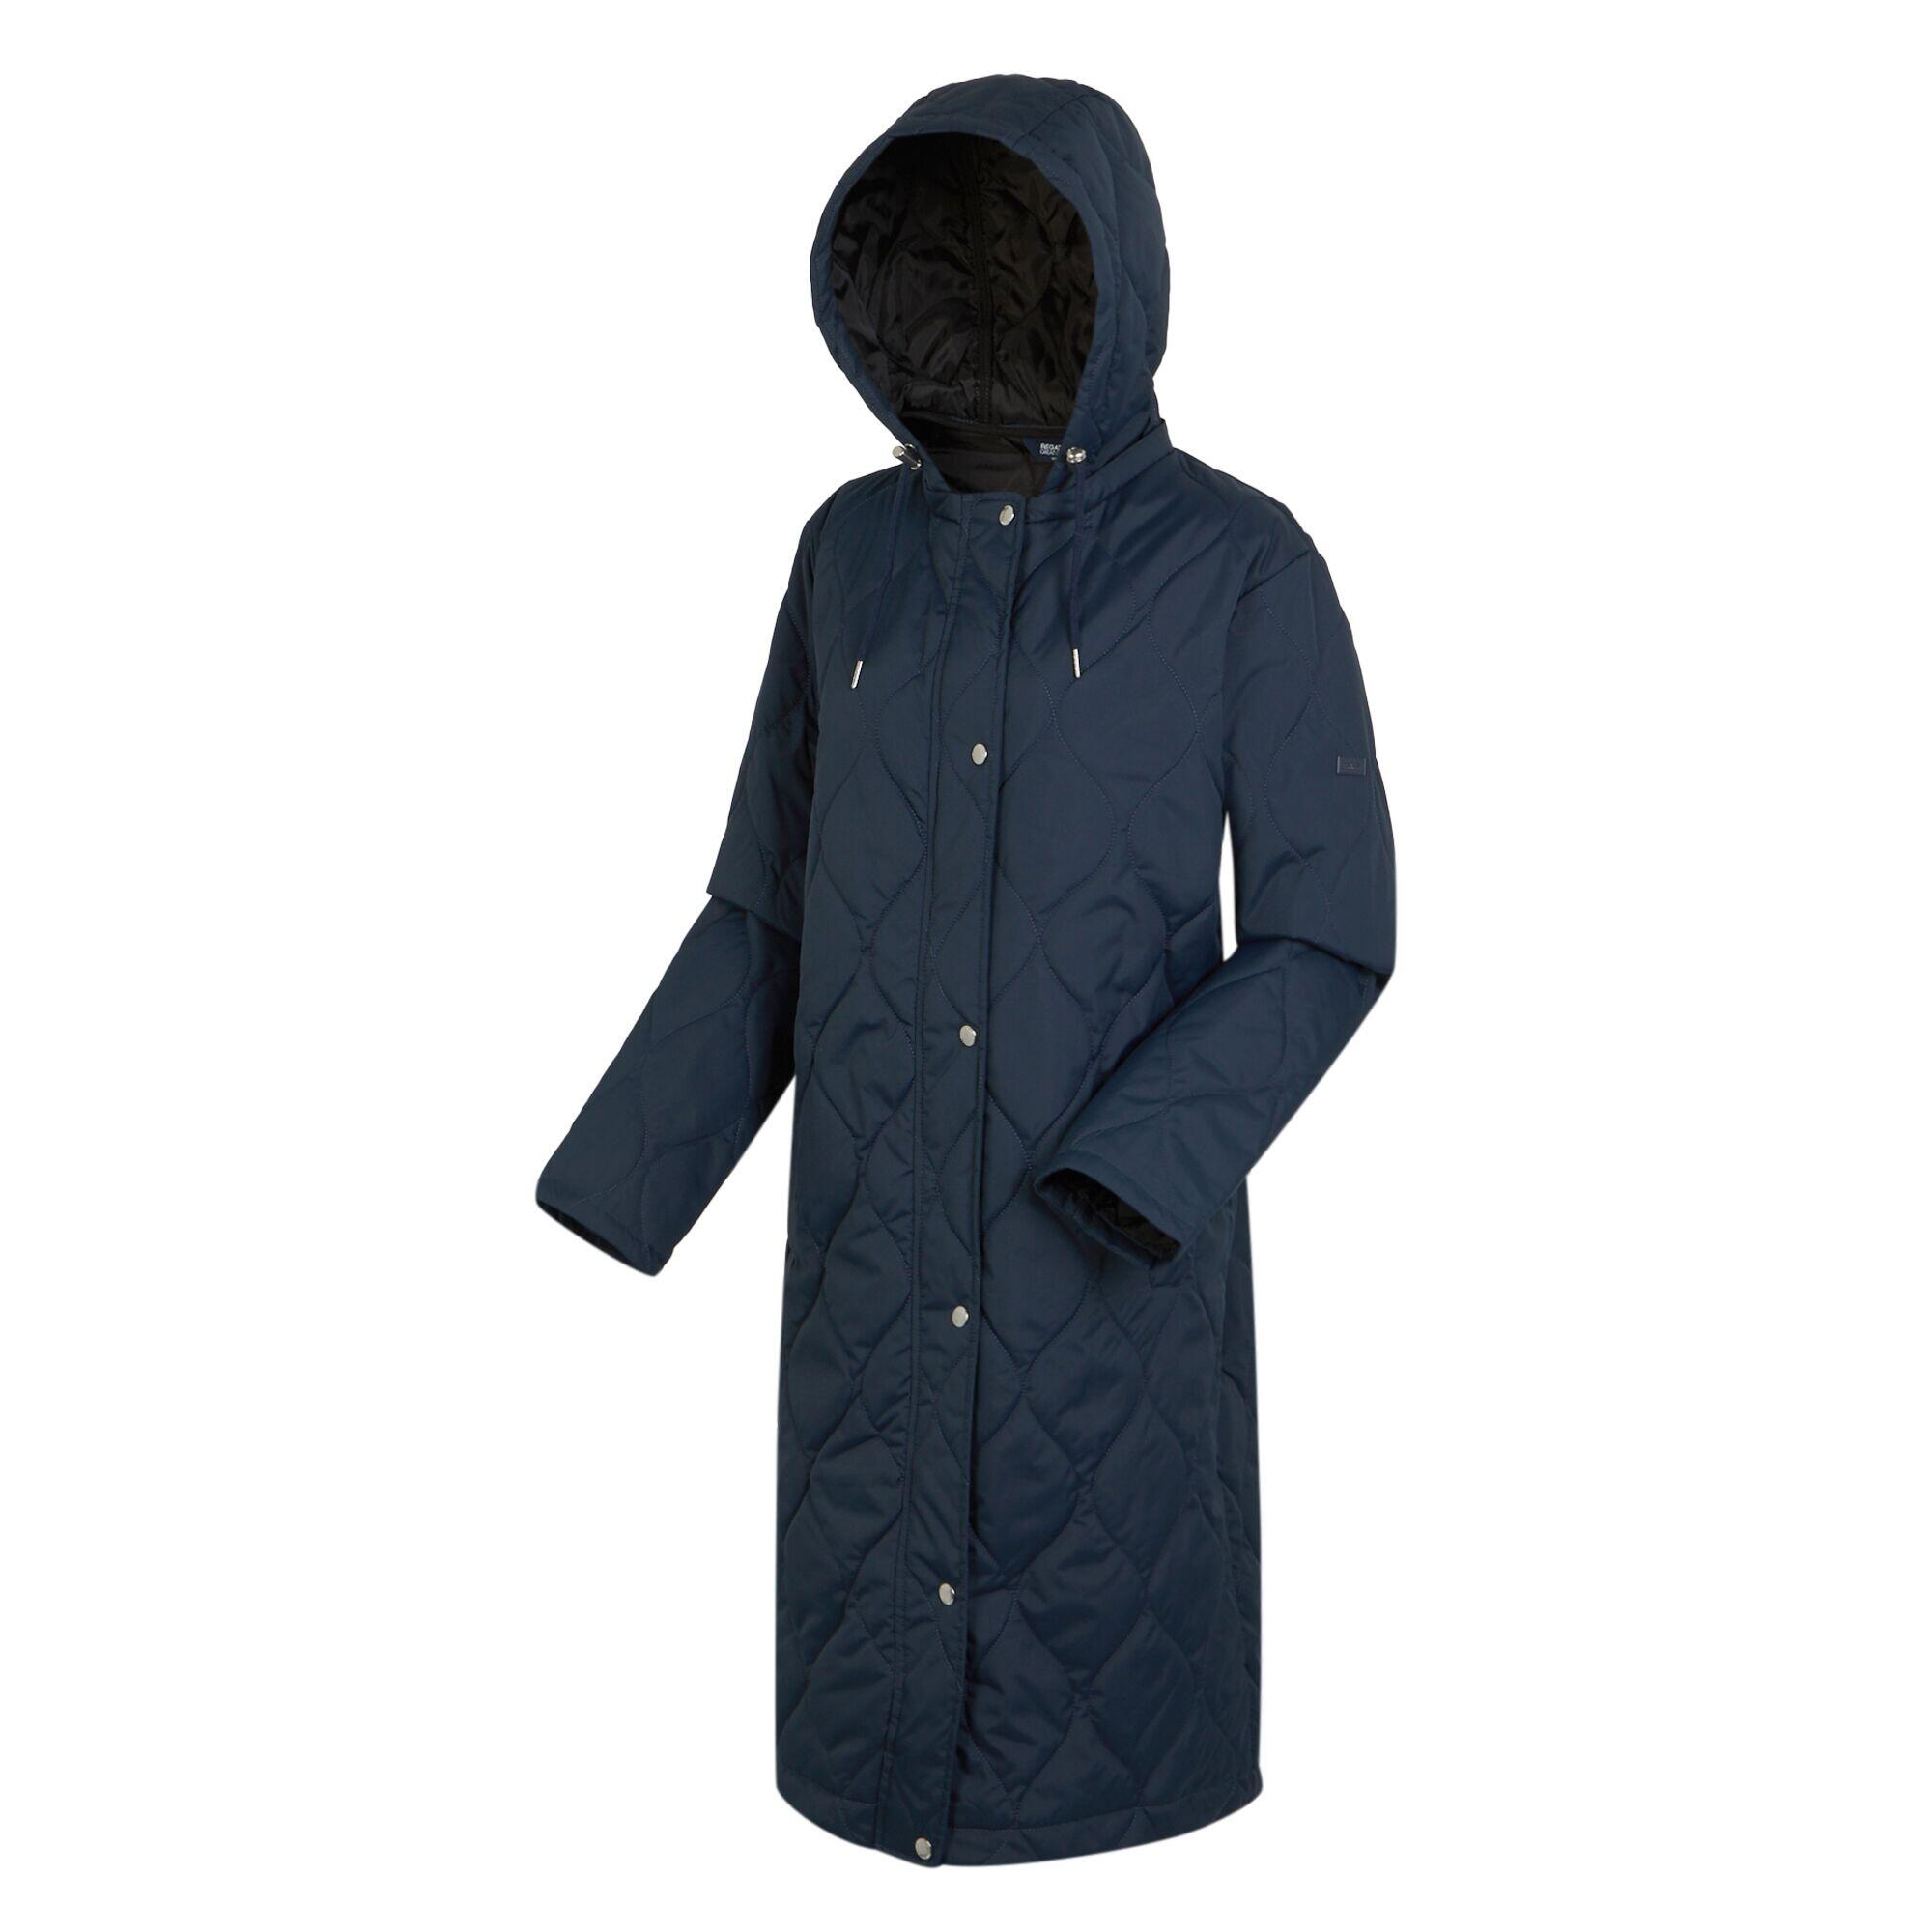 Womens/Ladies Jaycee Quilted Hooded Jacket (Navy/Black) 4/5